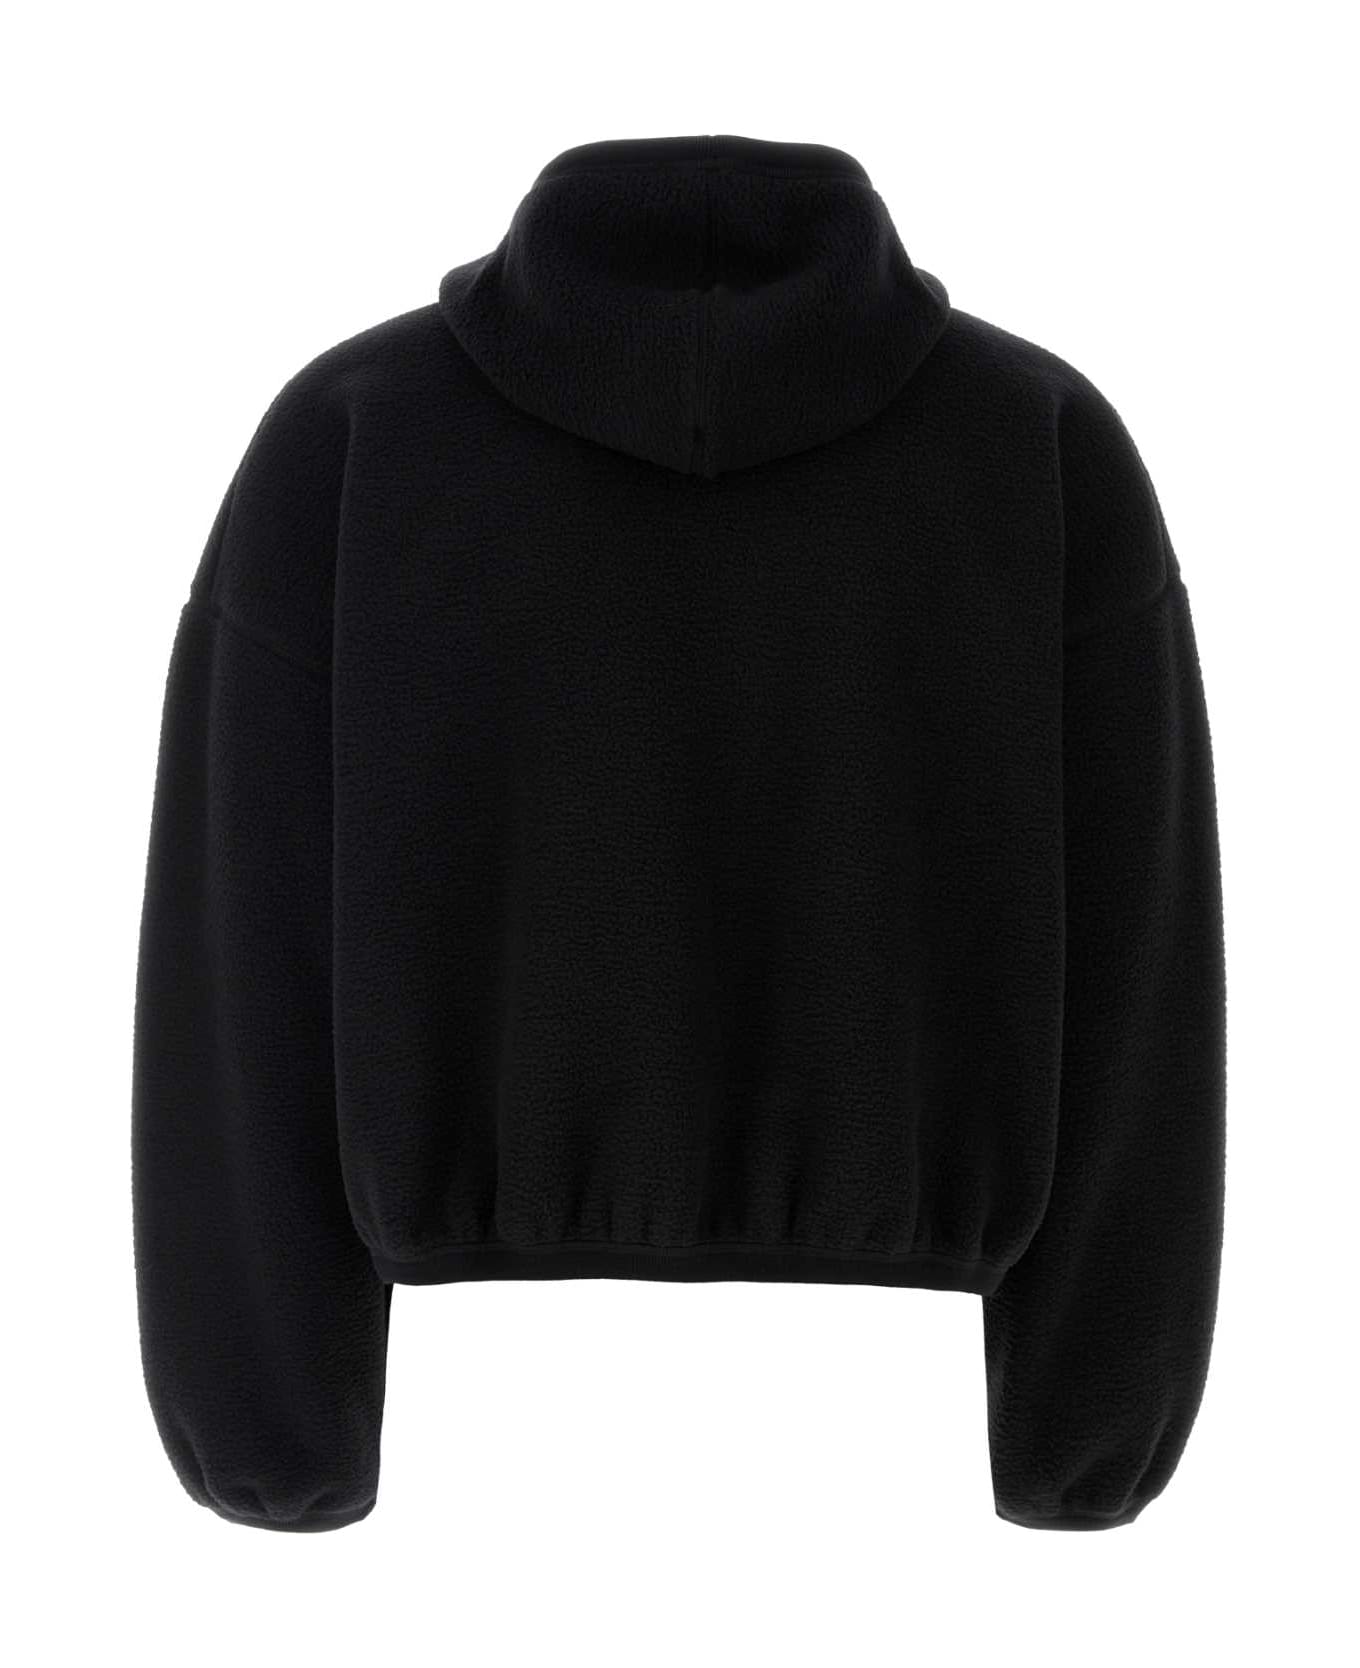 Alexander Wang Black Pile Sweatshirt - Black